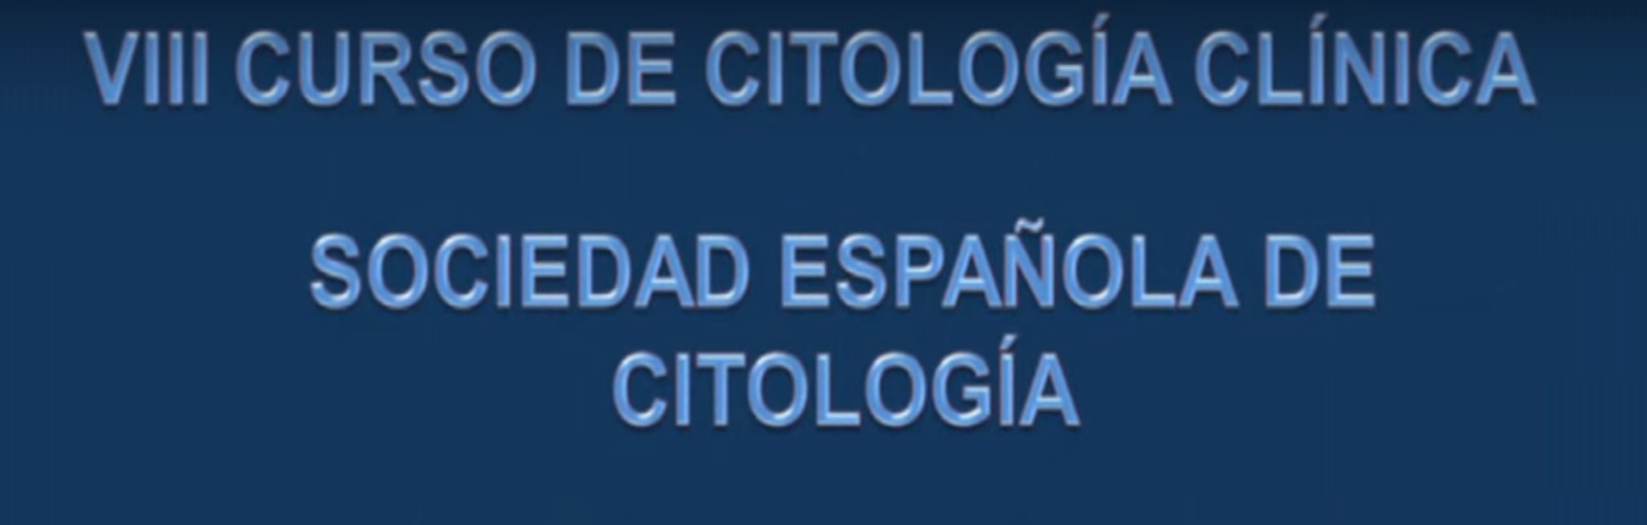 Citologia Clínica -VIII Curso de – Sociedad Española de Citología Parte 2